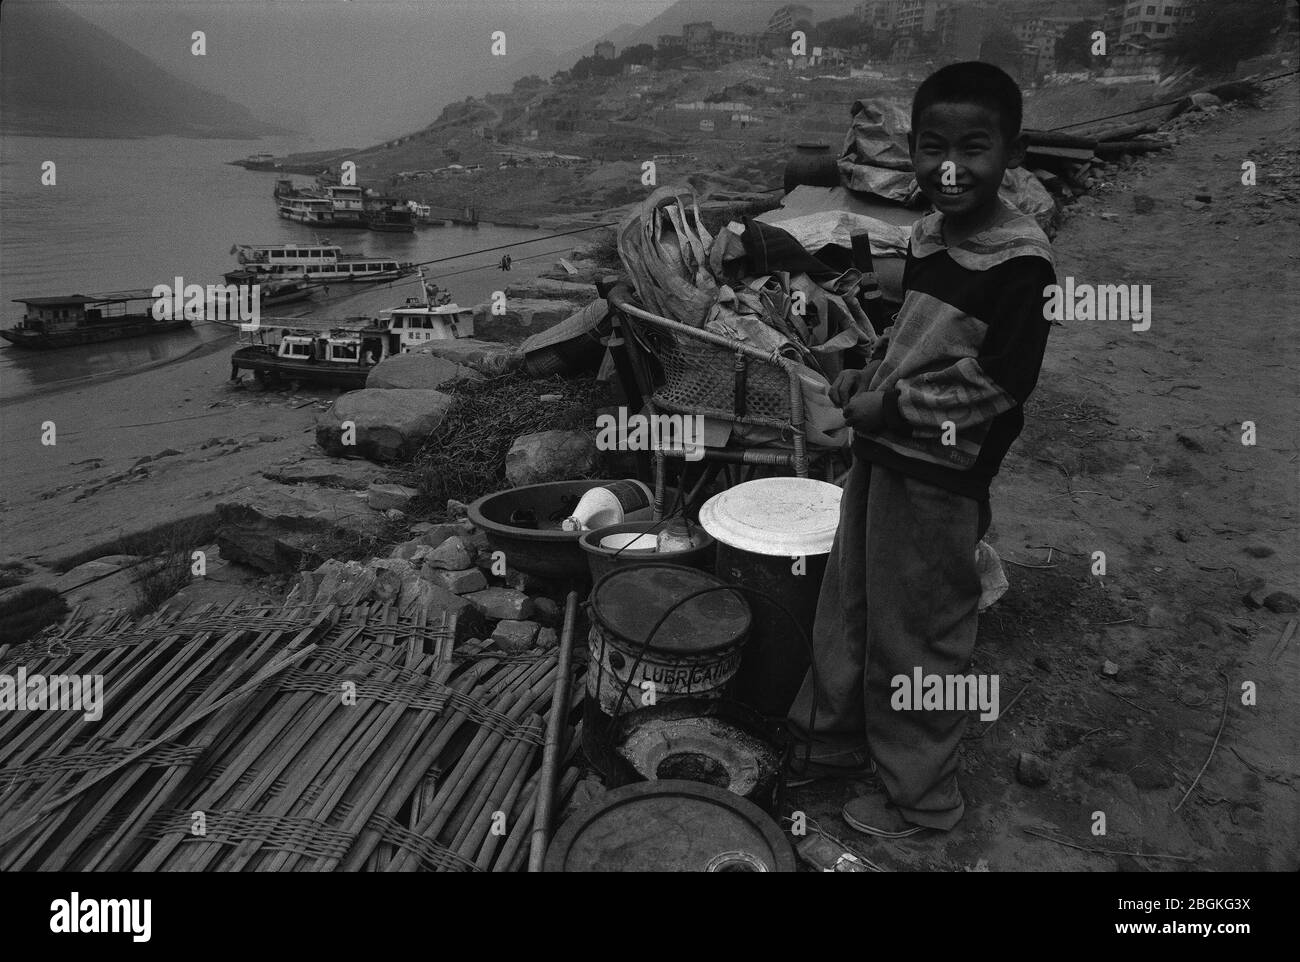 En novembre 2002, un jeune garçon vivant dans un sac près du fleuve Yangtze Yunyang Chongqing Banque D'Images